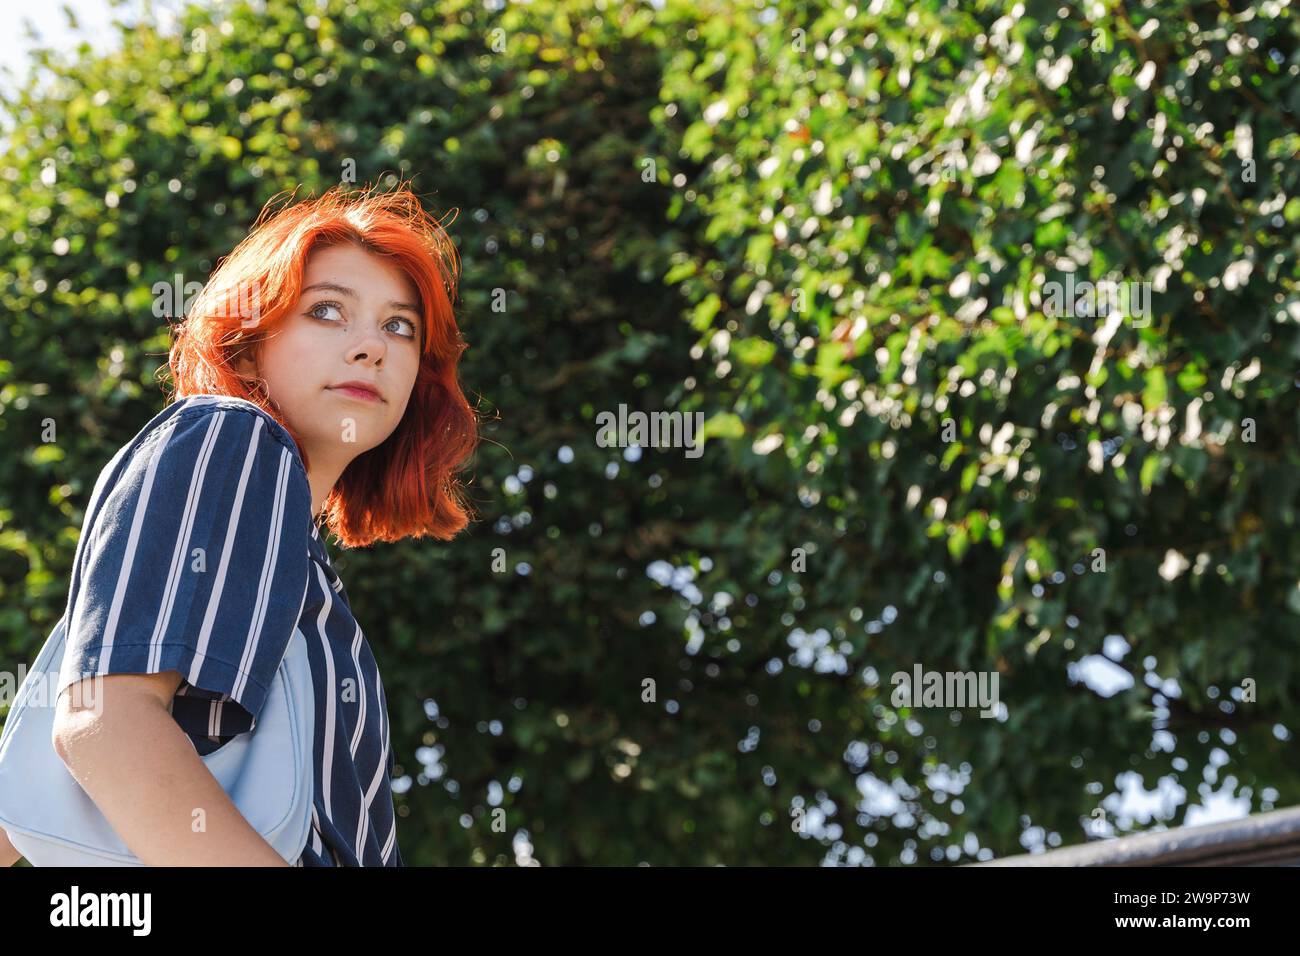 Un ritratto di una giovane ragazza adolescente della generazione Z dai capelli rossi che si gode una piacevole passeggiata in un bellissimo parco cittadino in una soleggiata giornata estiva, circondata da una lussureggiante vegetazione Foto Stock